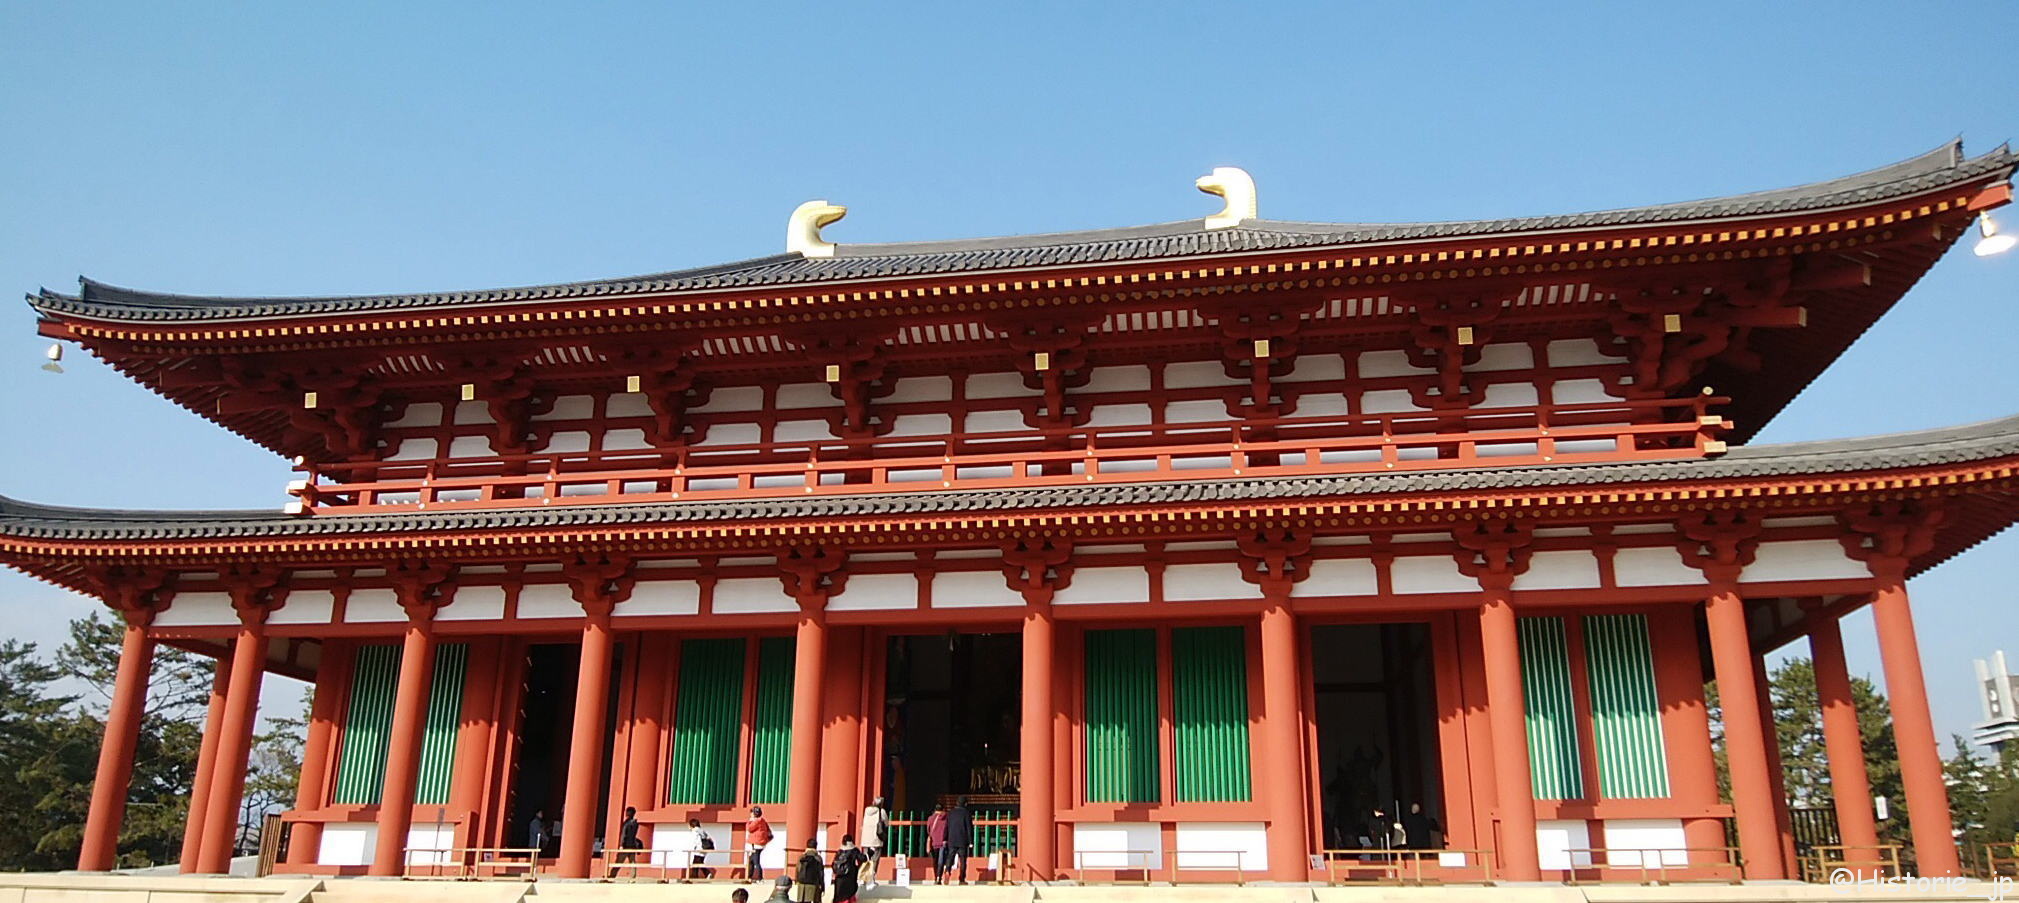 興福寺中金堂・約300年ぶりに再建・平成30年10月20日(土)から一般拝観